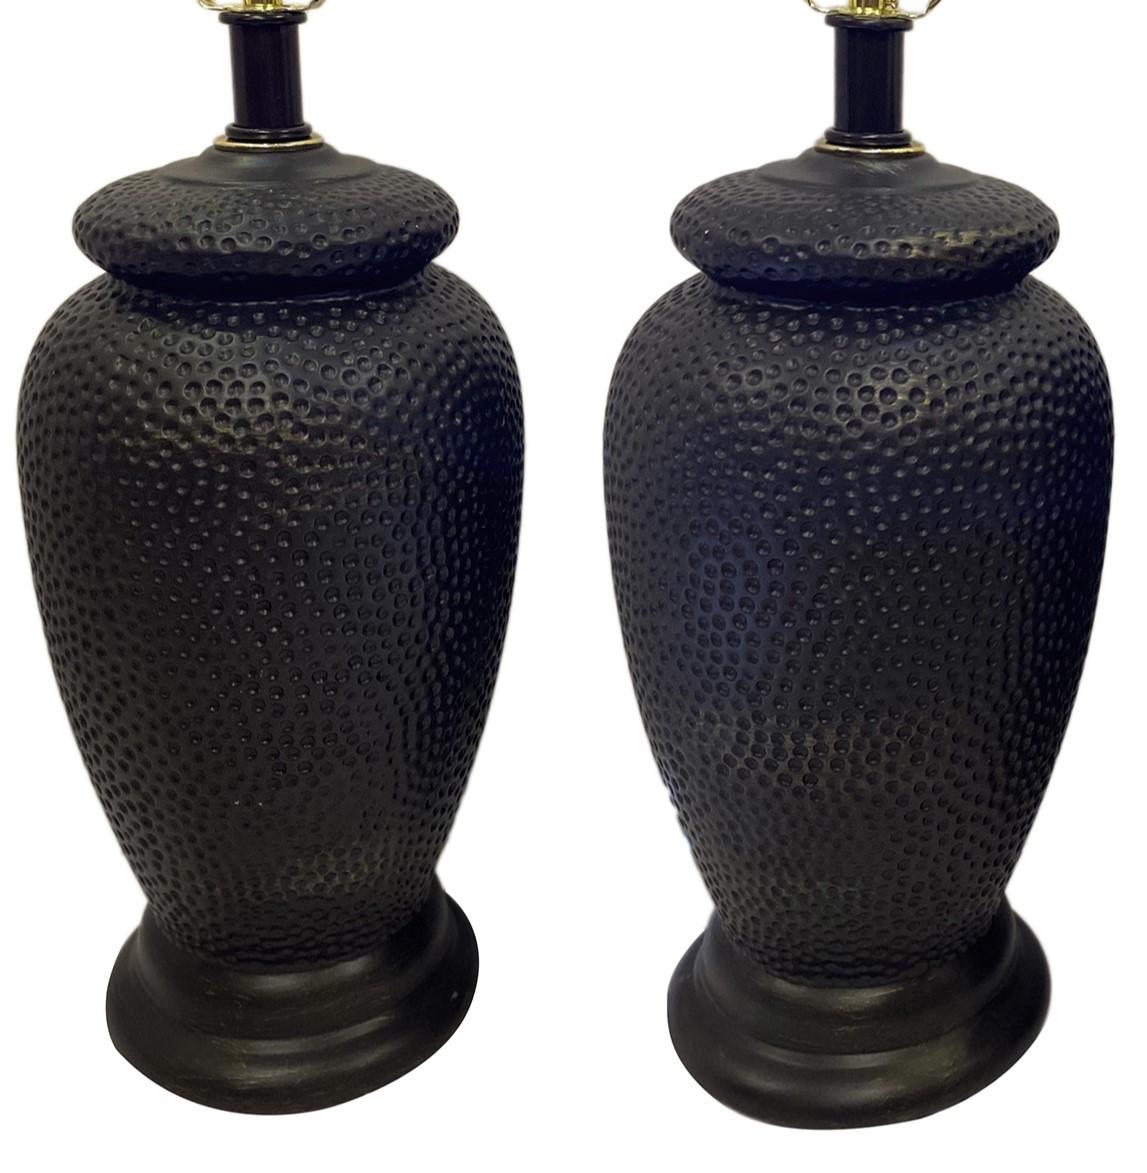 Paire de lampes en céramique française des années 1960 avec texture martelée.

Mesures :
Hauteur du corps : 15″.
Hauteur du reste de l'abat-jour : 24.5″.
Diamètre : 8″.